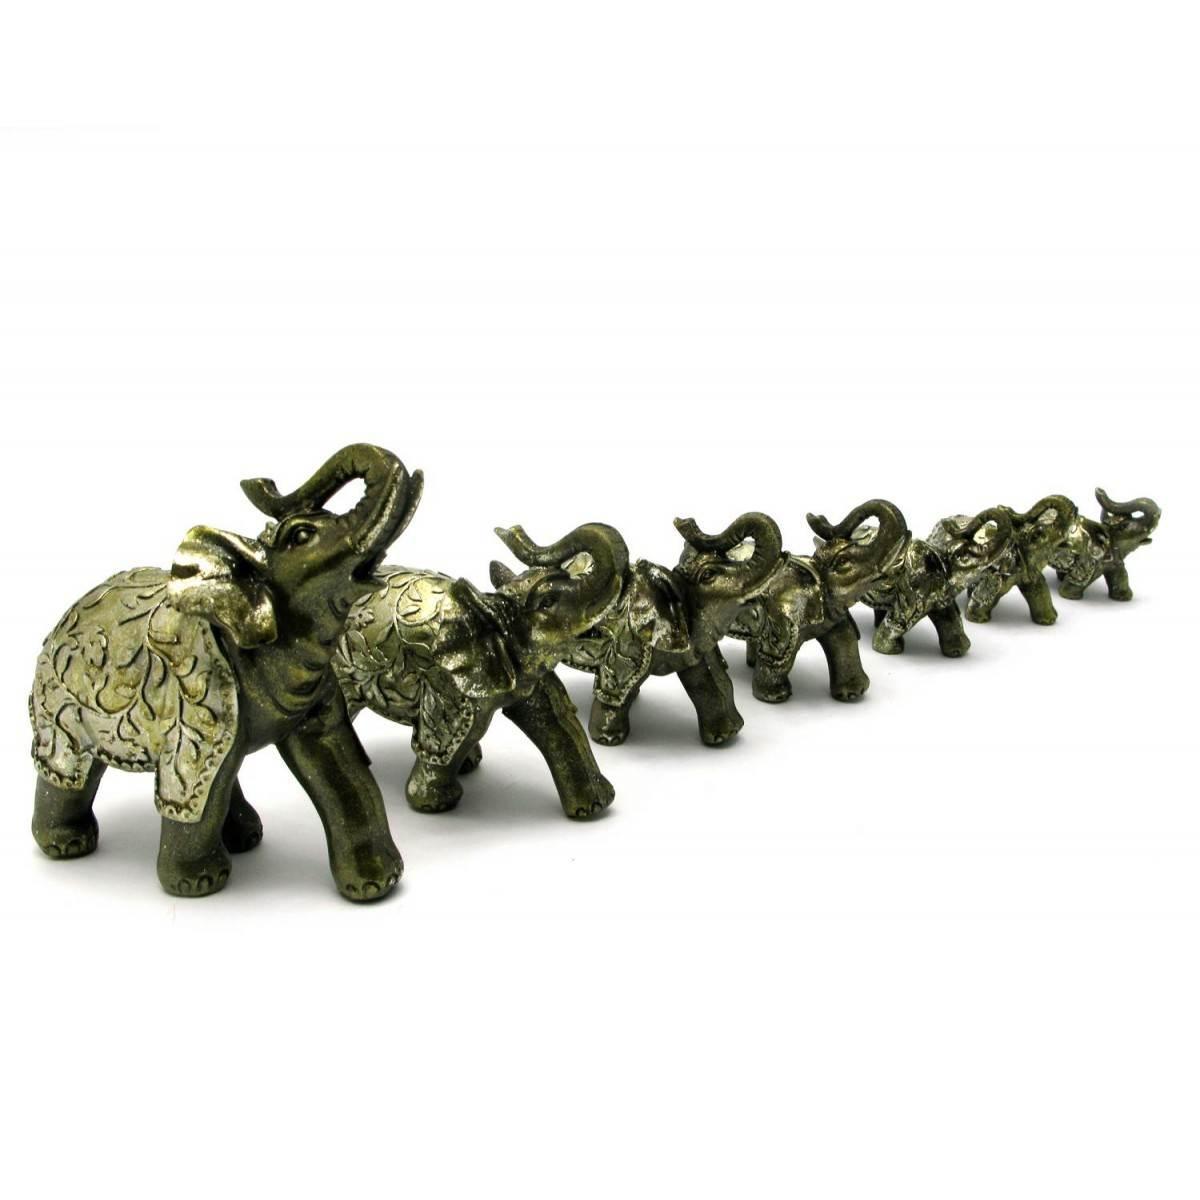 Семь слоников. Набор слоников. Набор статуэток слонов. Слоники статуэтки 7 штук. Набор слоников 7.